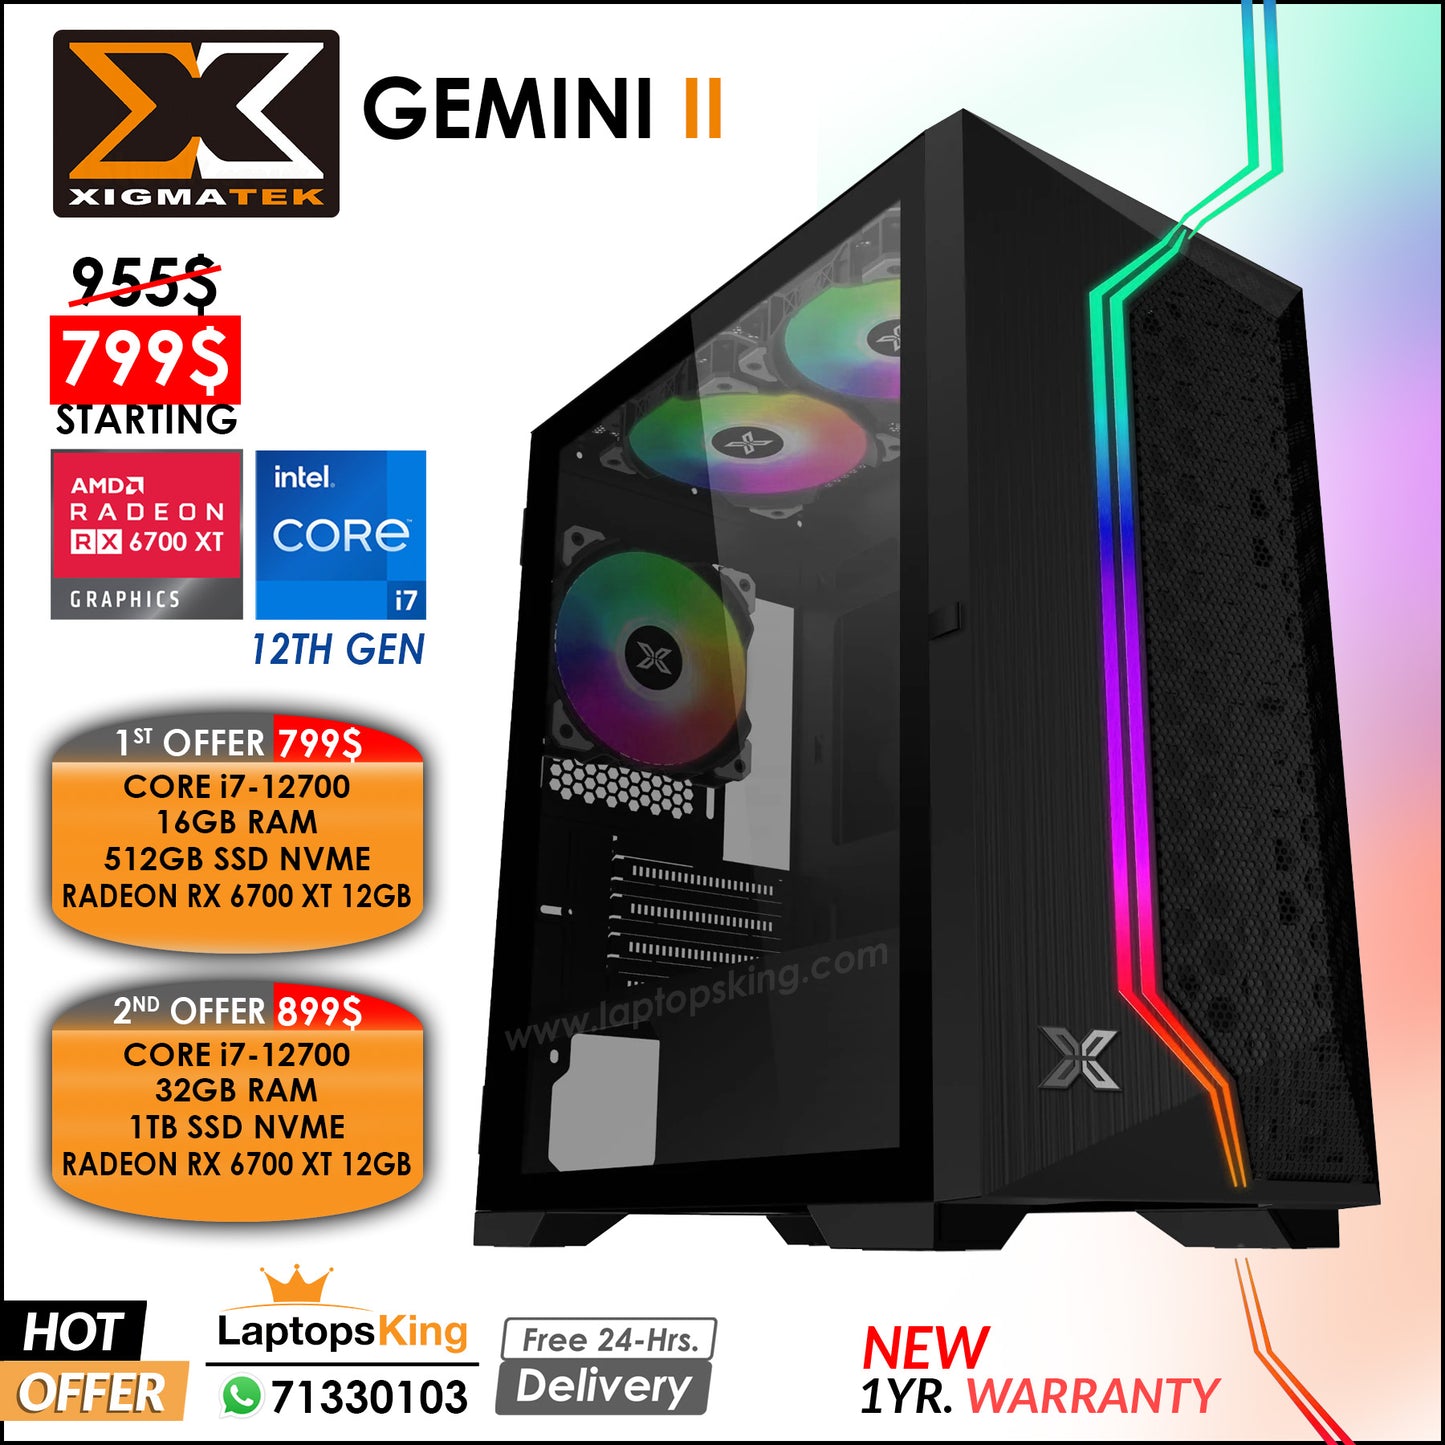 Xigmatek Gemini II Core i7-12700 Vga Radeon Rx 6700 Xt Rgb Desktop Computer Offers (New 1yr. Warranty)